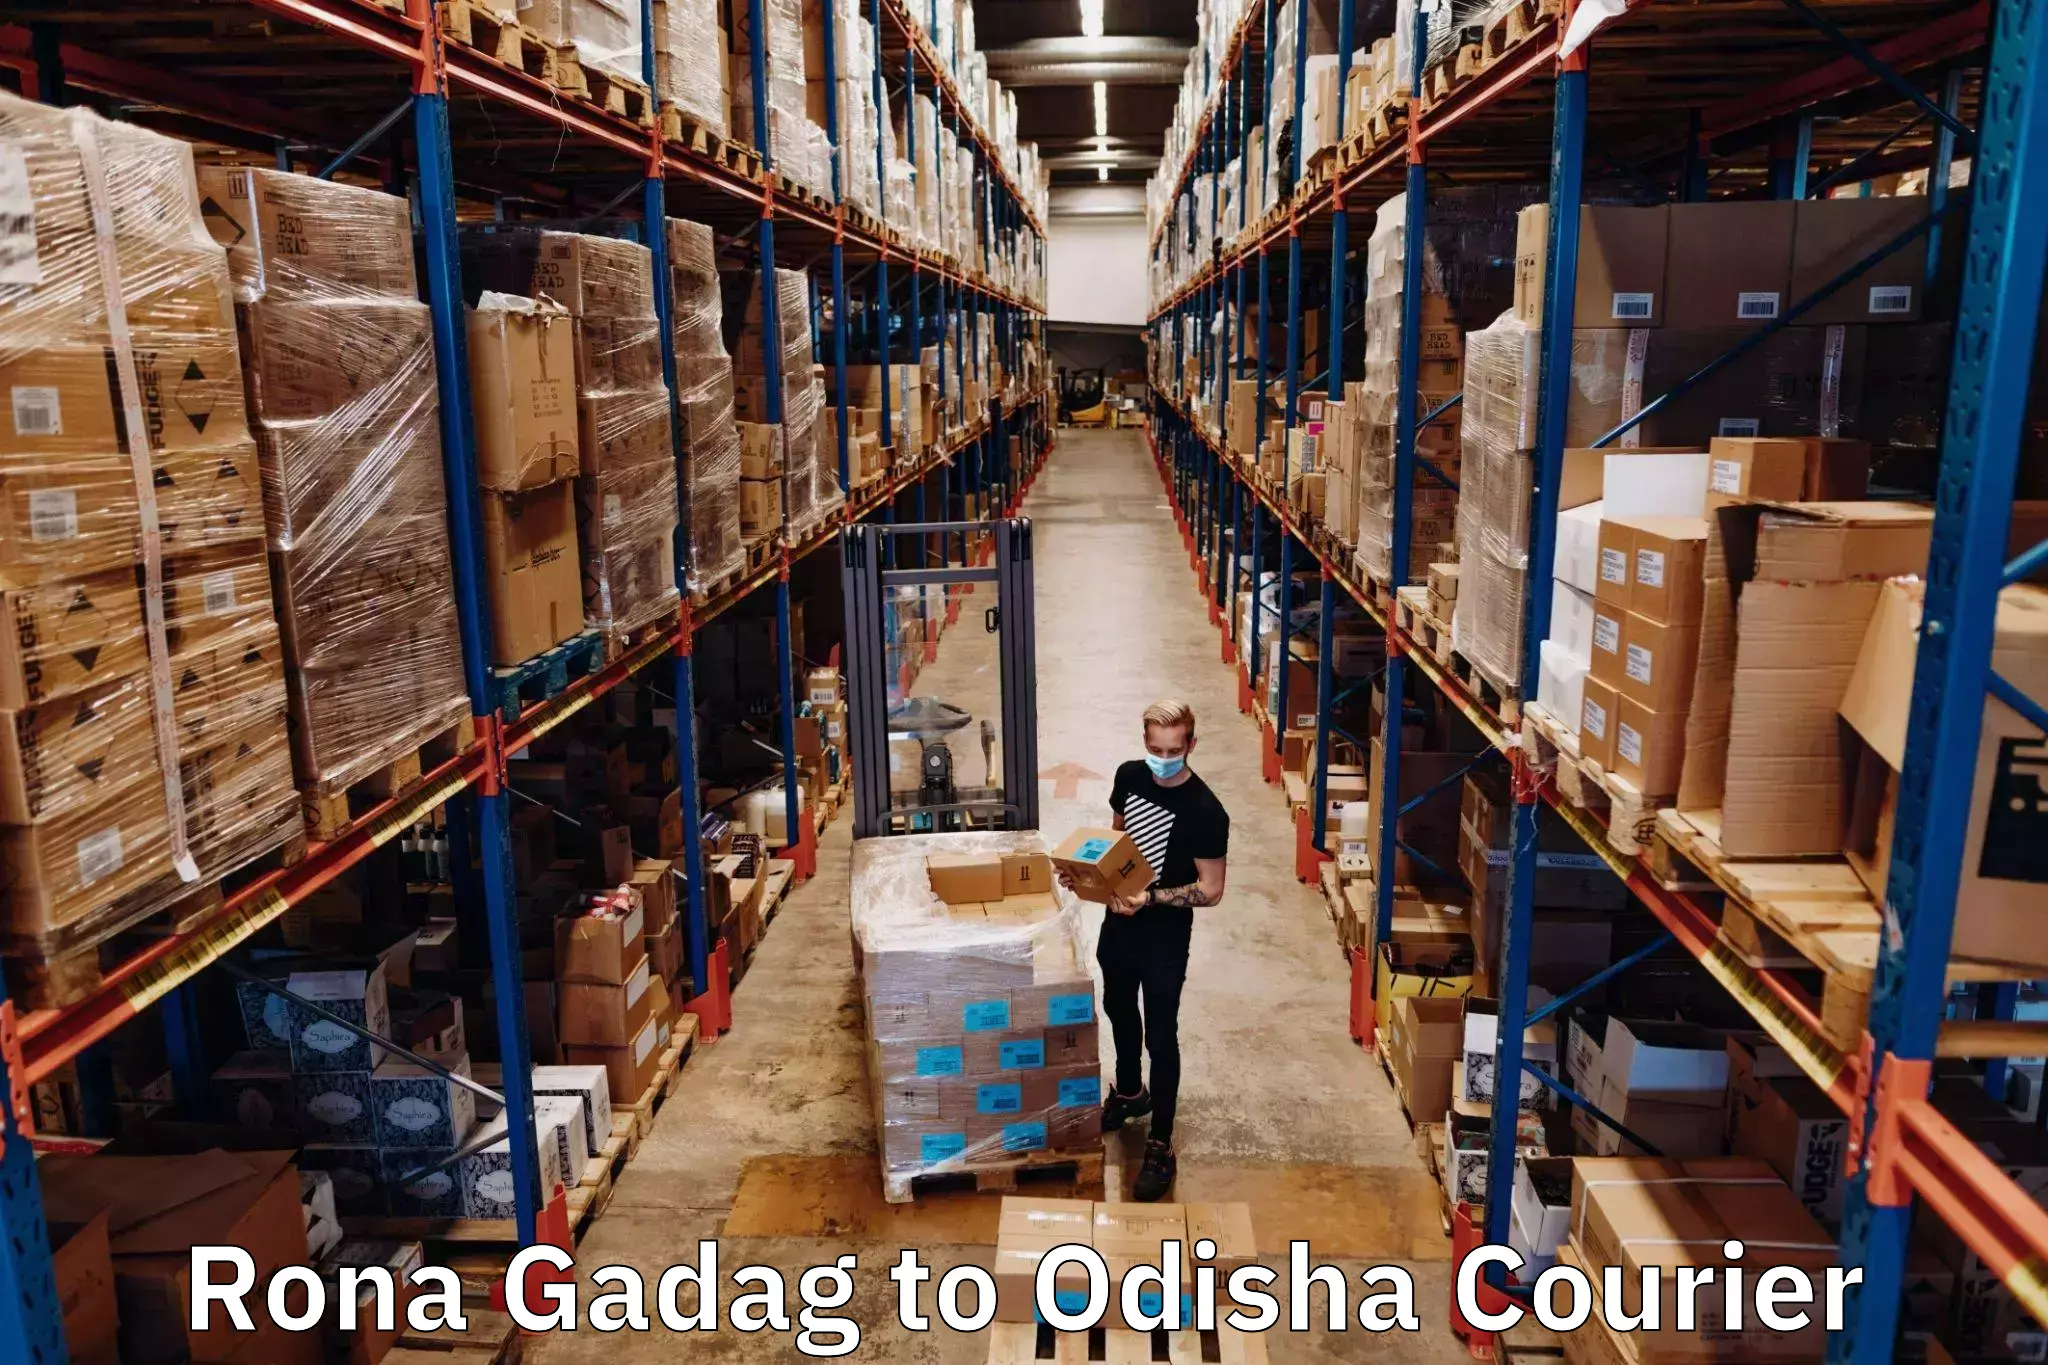 Reliable courier service Rona Gadag to Odisha